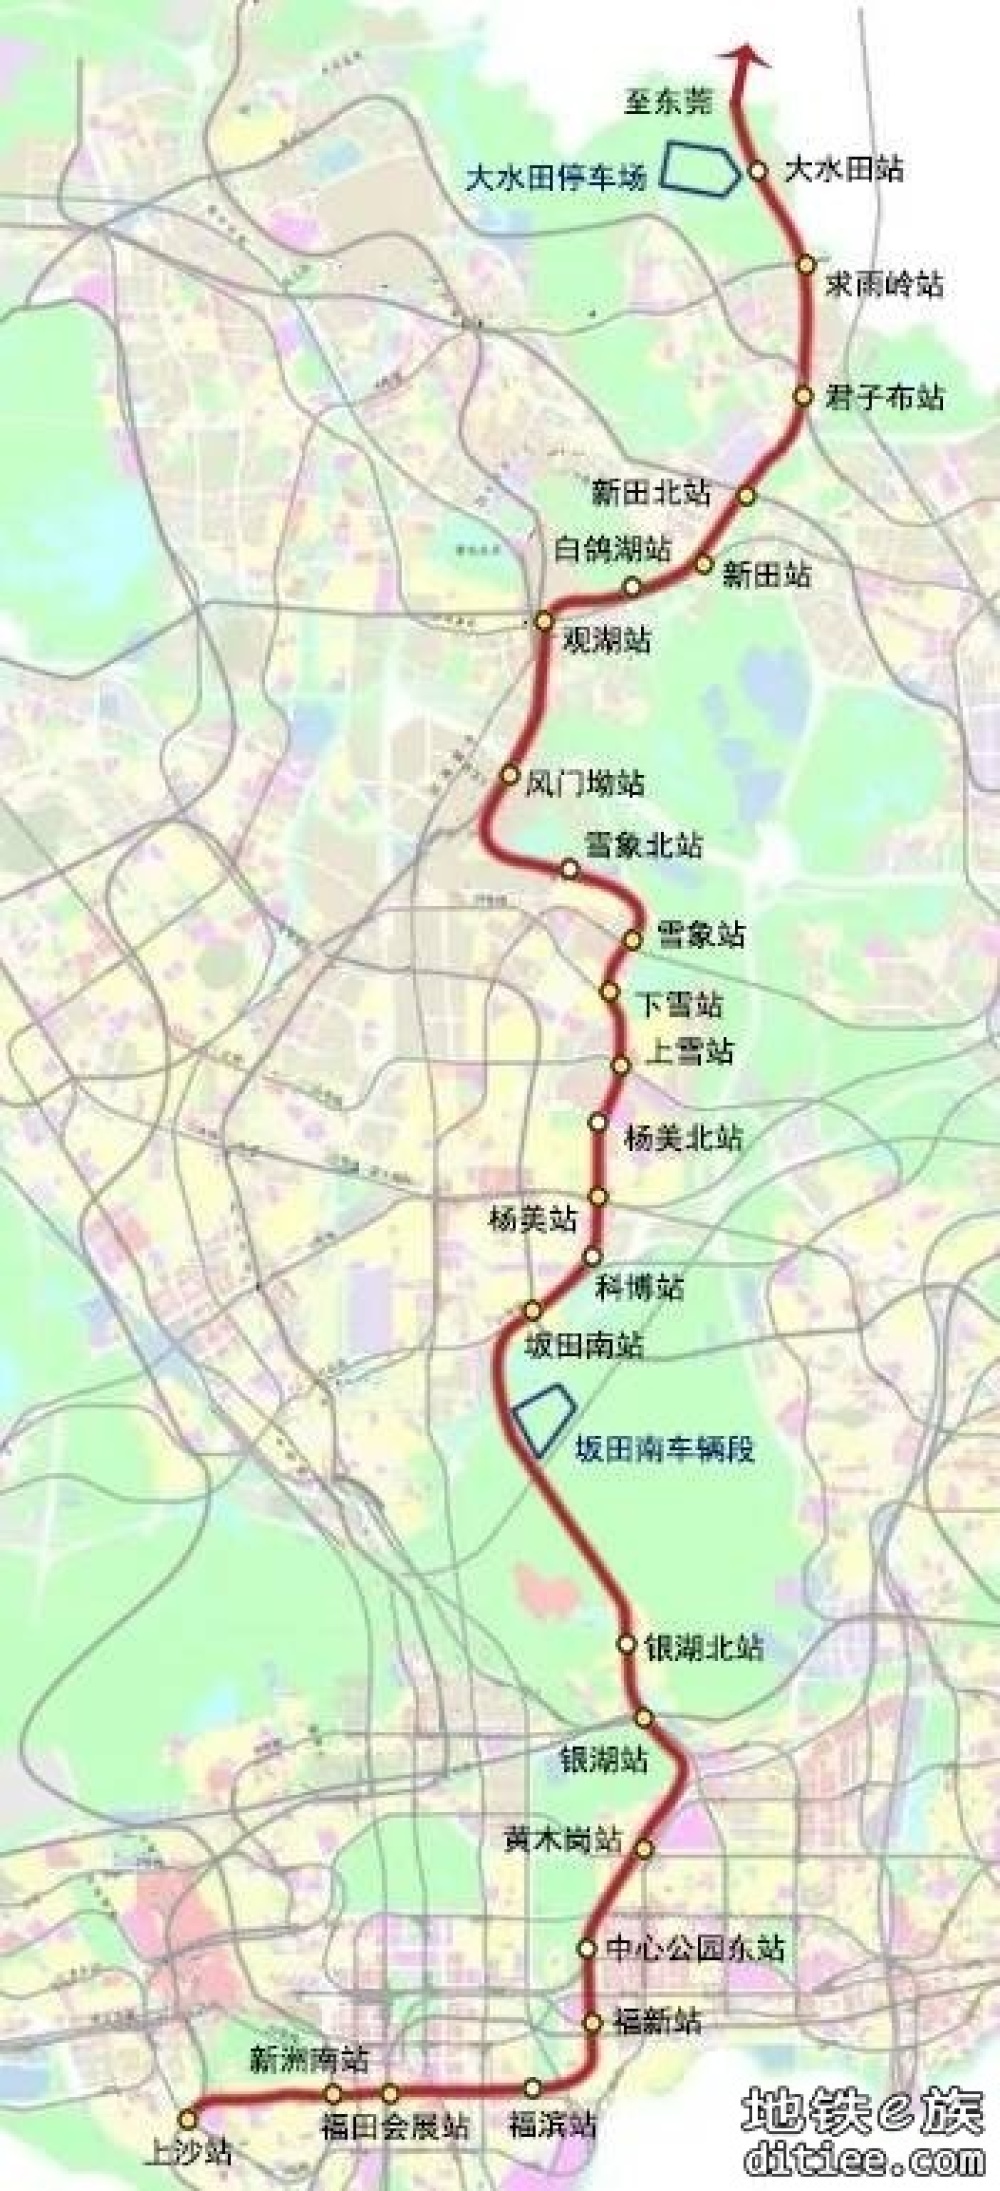 《深圳市轨道交通27号线交通详细规划调整（雪象南至杨美段）》（草案）的公示